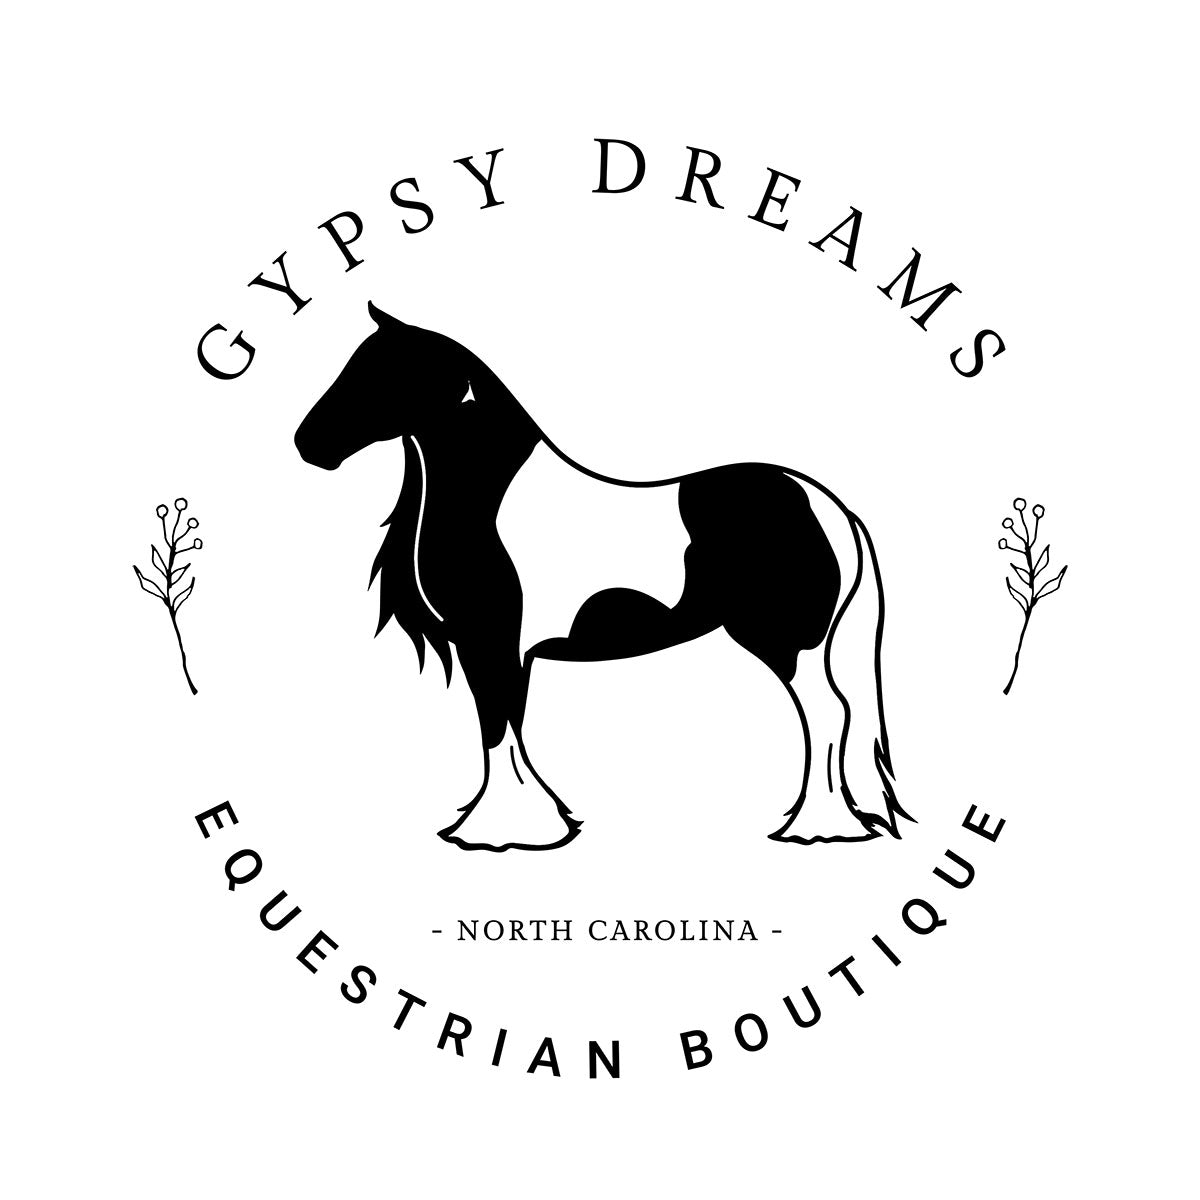 GypsyDreamsEquestrianBoutique